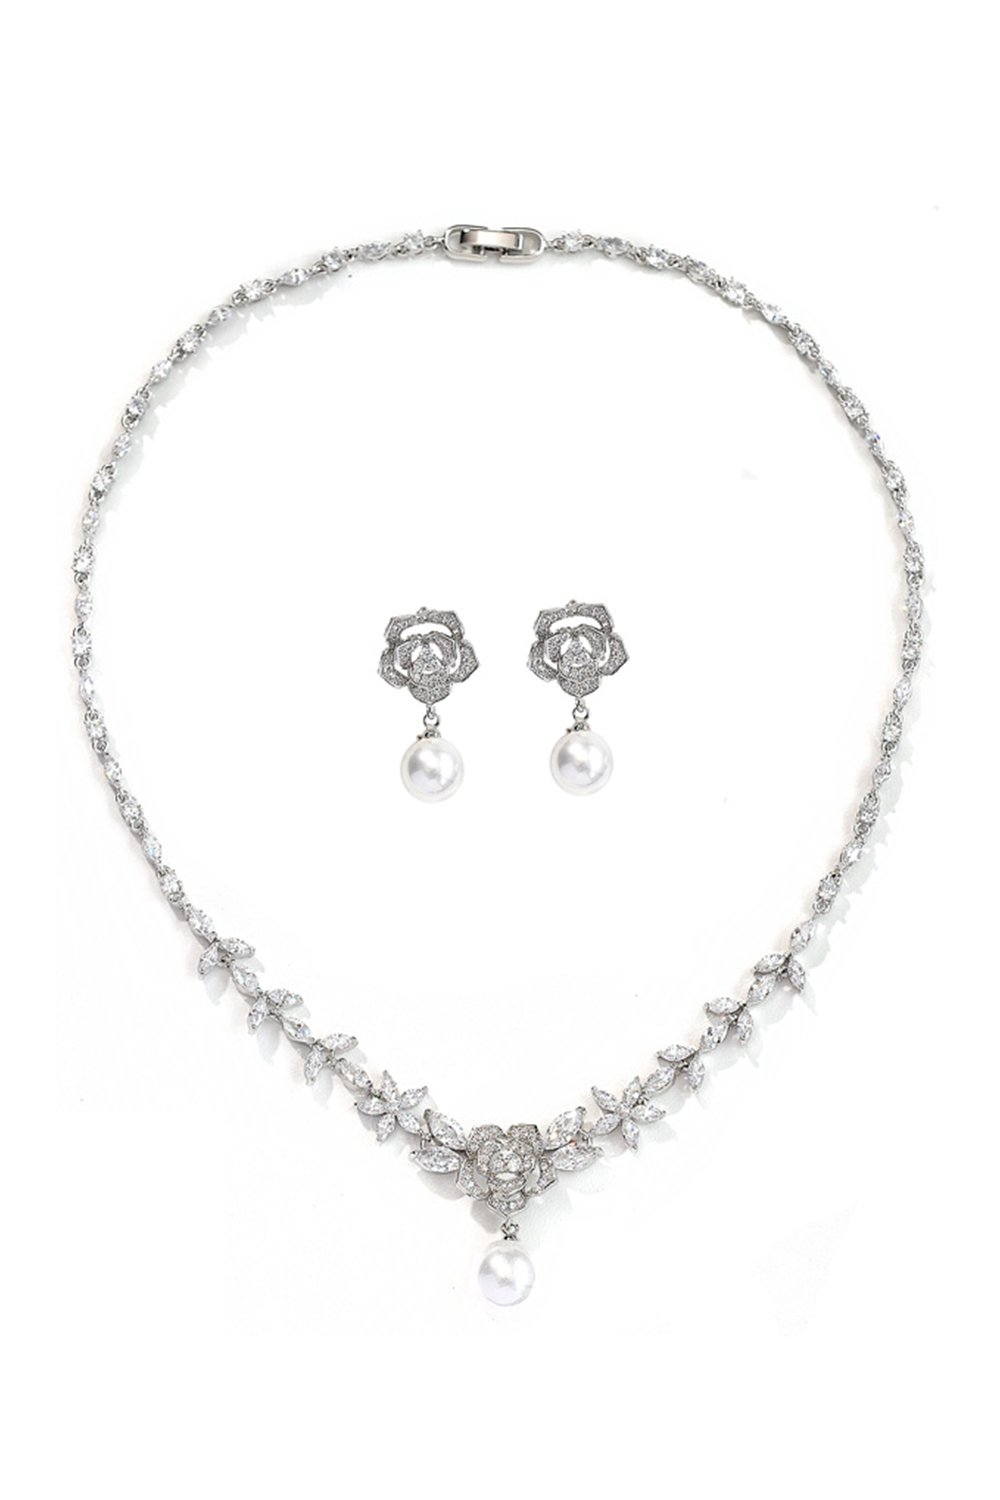 Alloy Zircon Pearl Necklace Earrings Jewelry CY0093